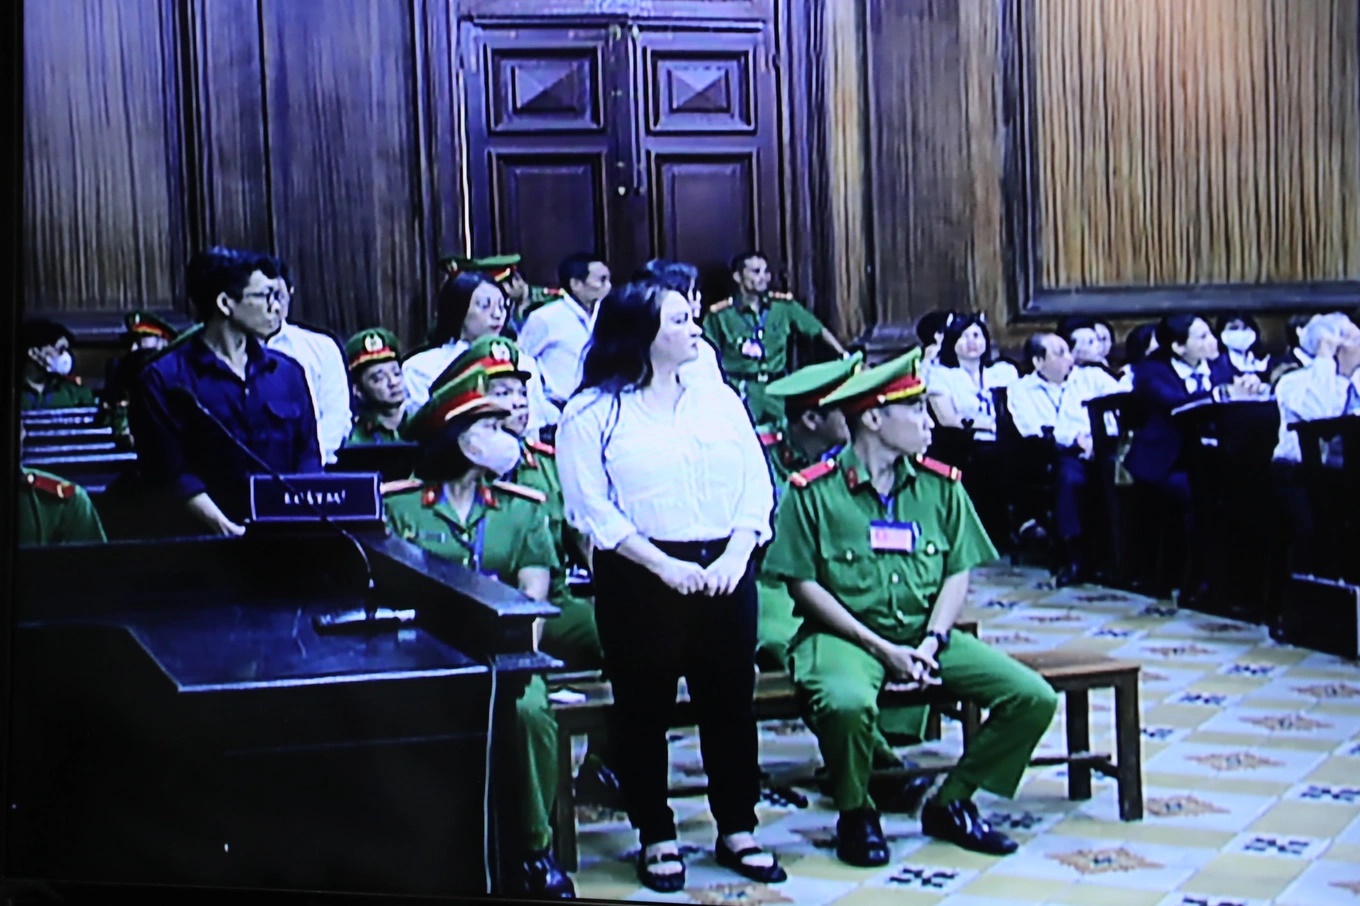 Liên quan bà Phương Hằng, tòa kiến nghị tiếp tục điều tra ông Huỳnh Uy Dũng | Tin tức Online